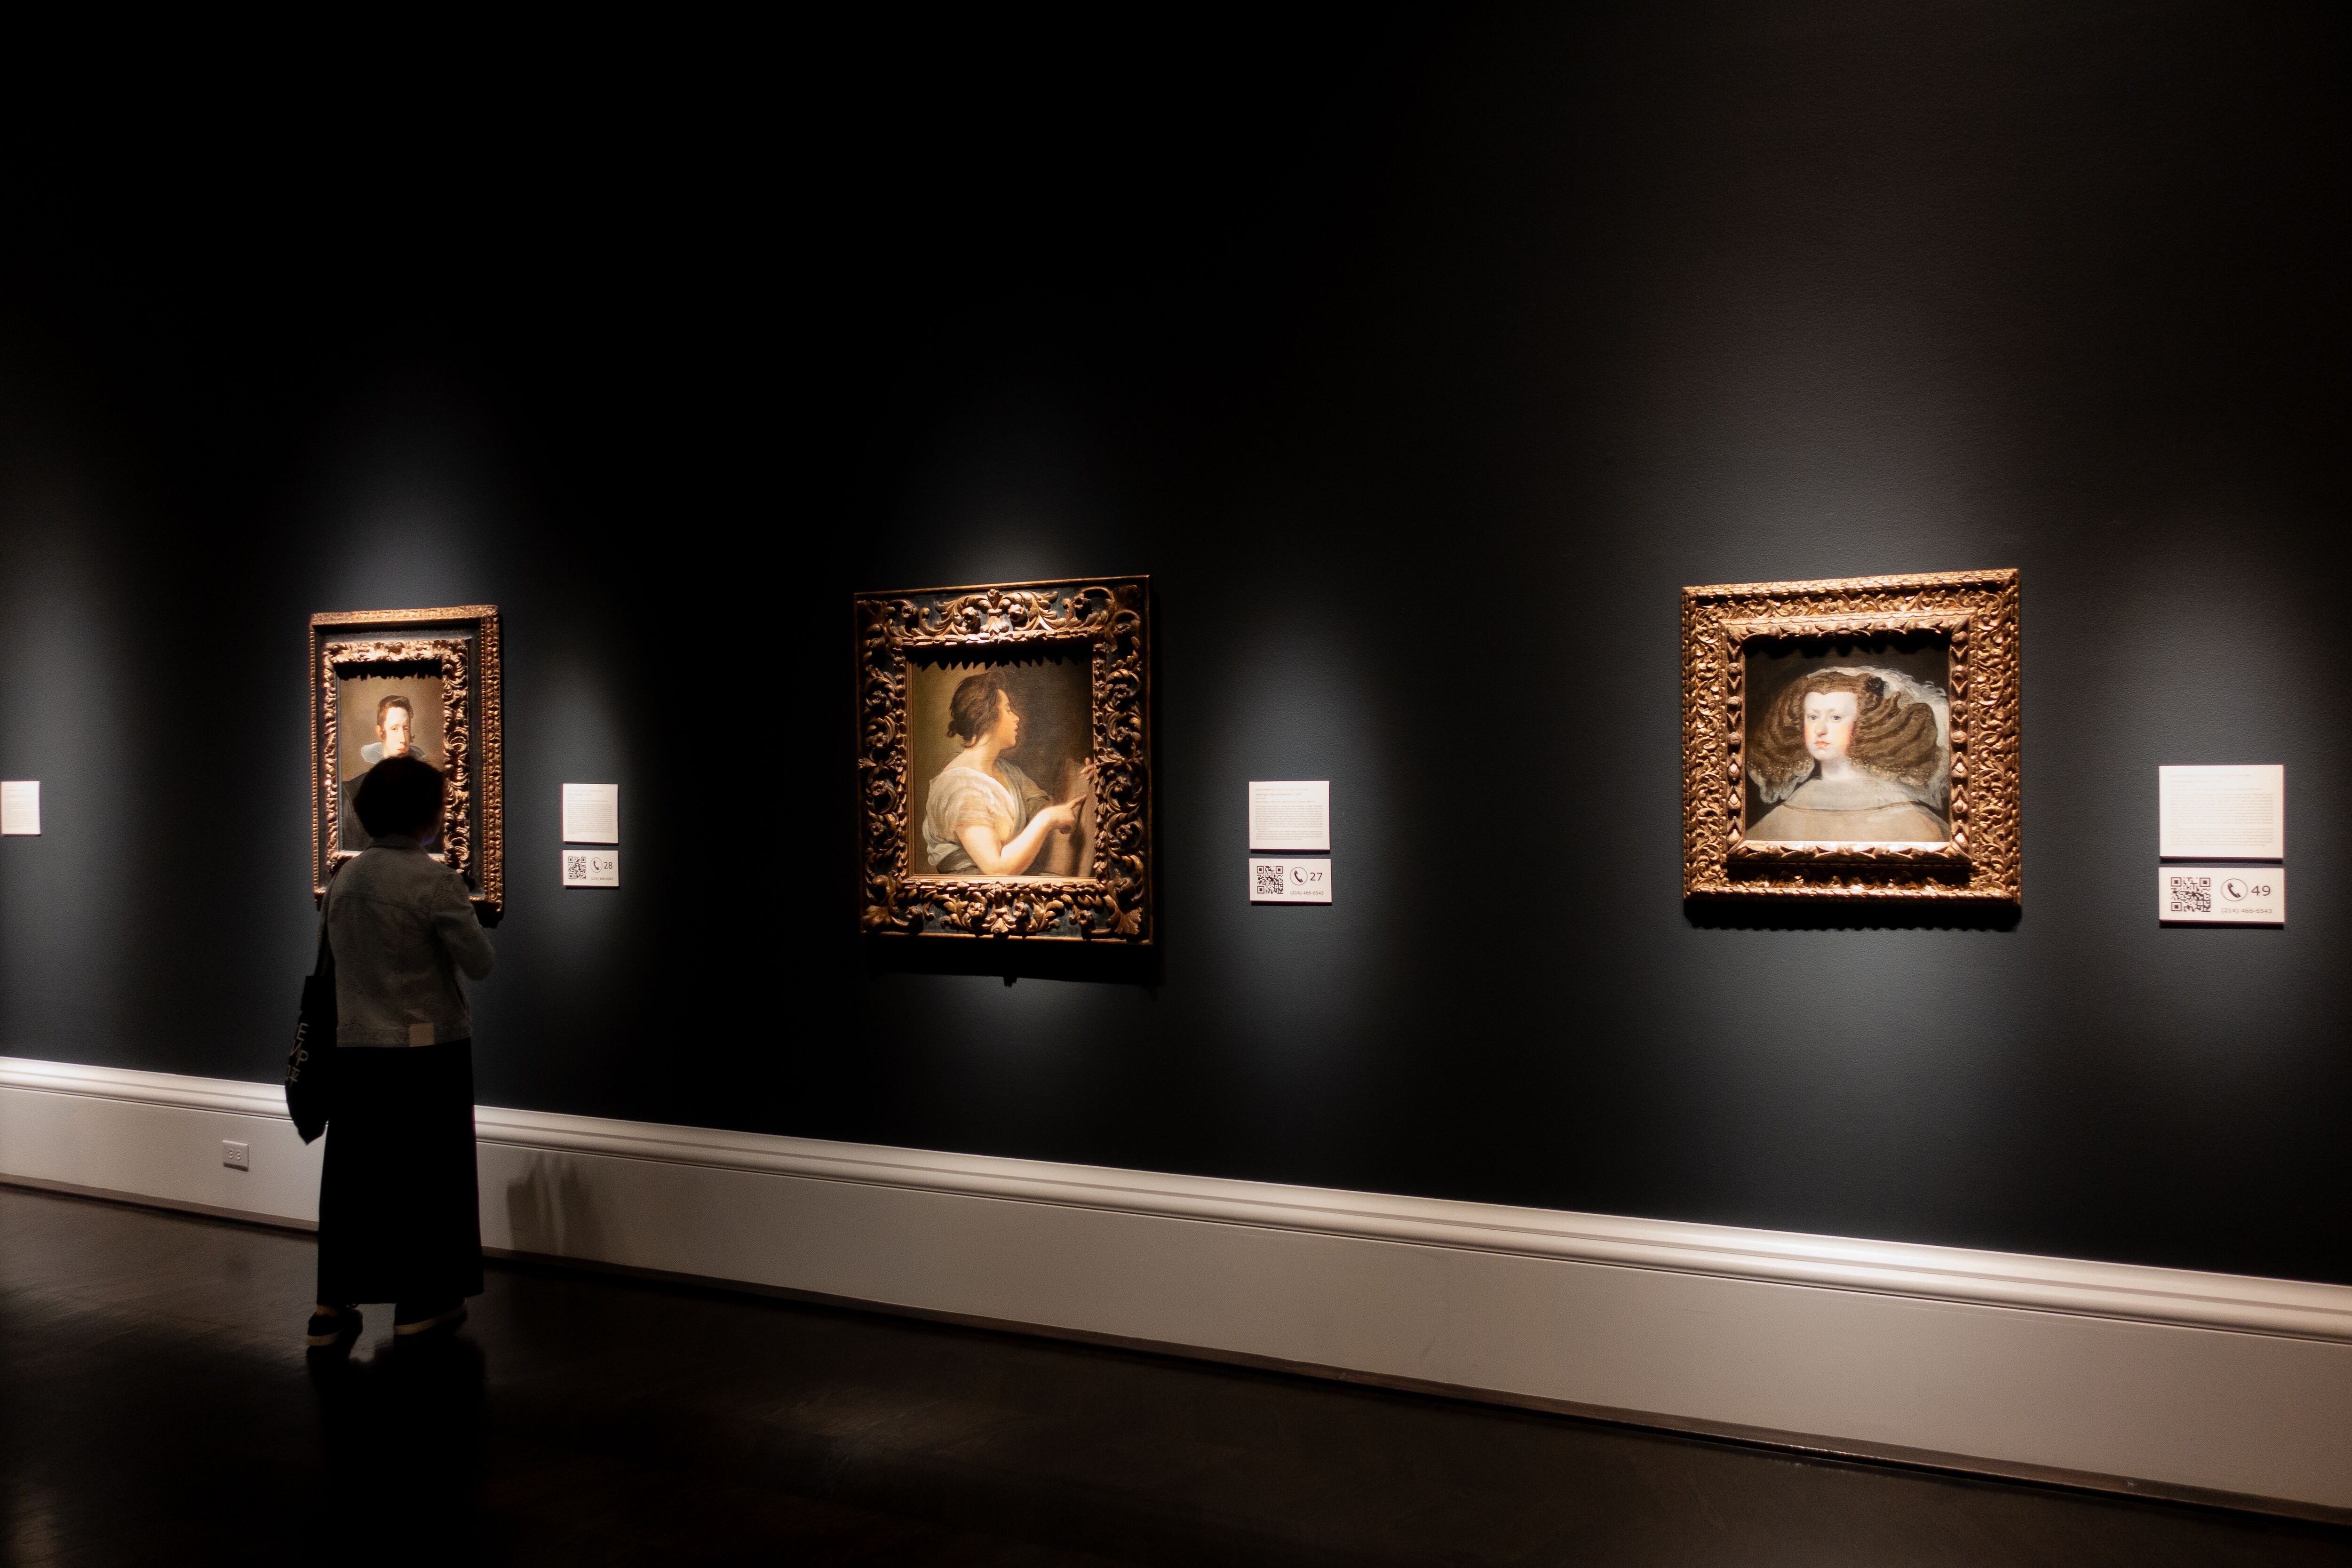 Tres obras de Velázquez en el Meadows Museum. Desde la izquierda, Retrato de Felipe IV, Sibila y retrato de Mariana de Austria.